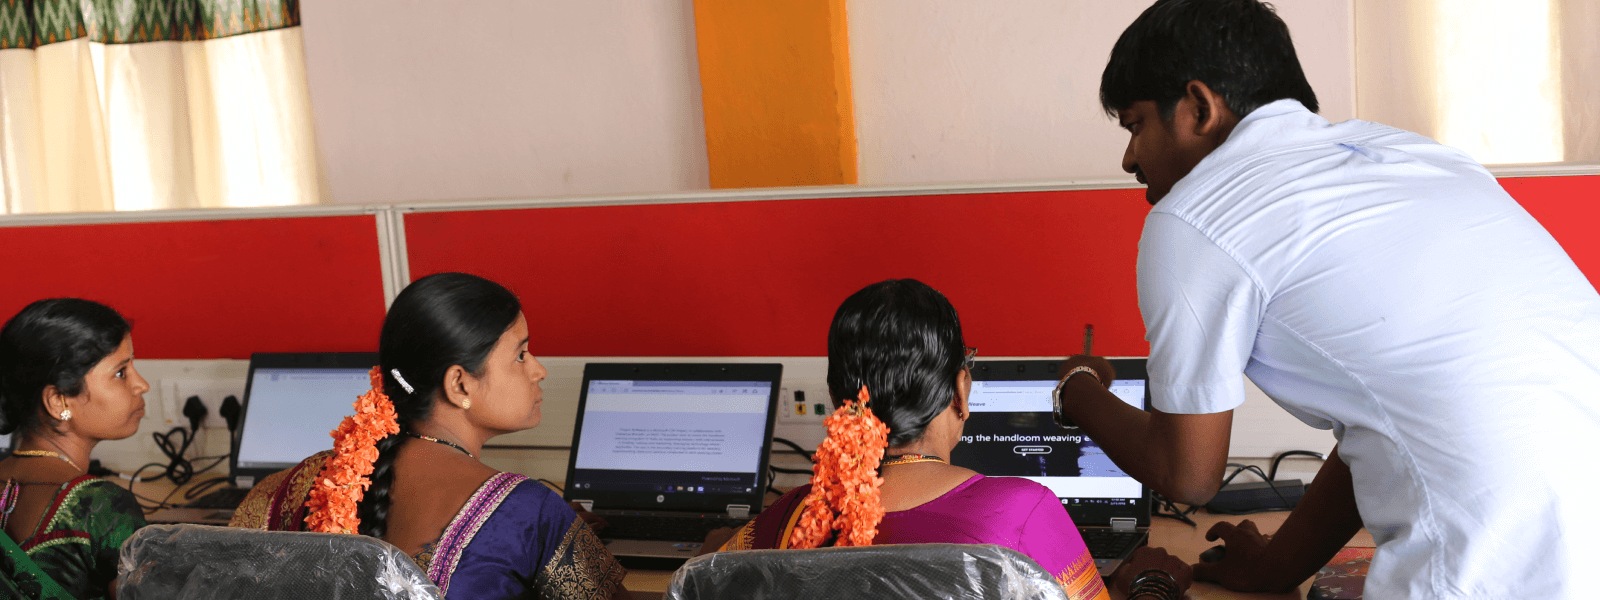 In einem Computerraum spricht eine Lehrkraft mit drei Studenten, die vor ihren Laptops sitzen.